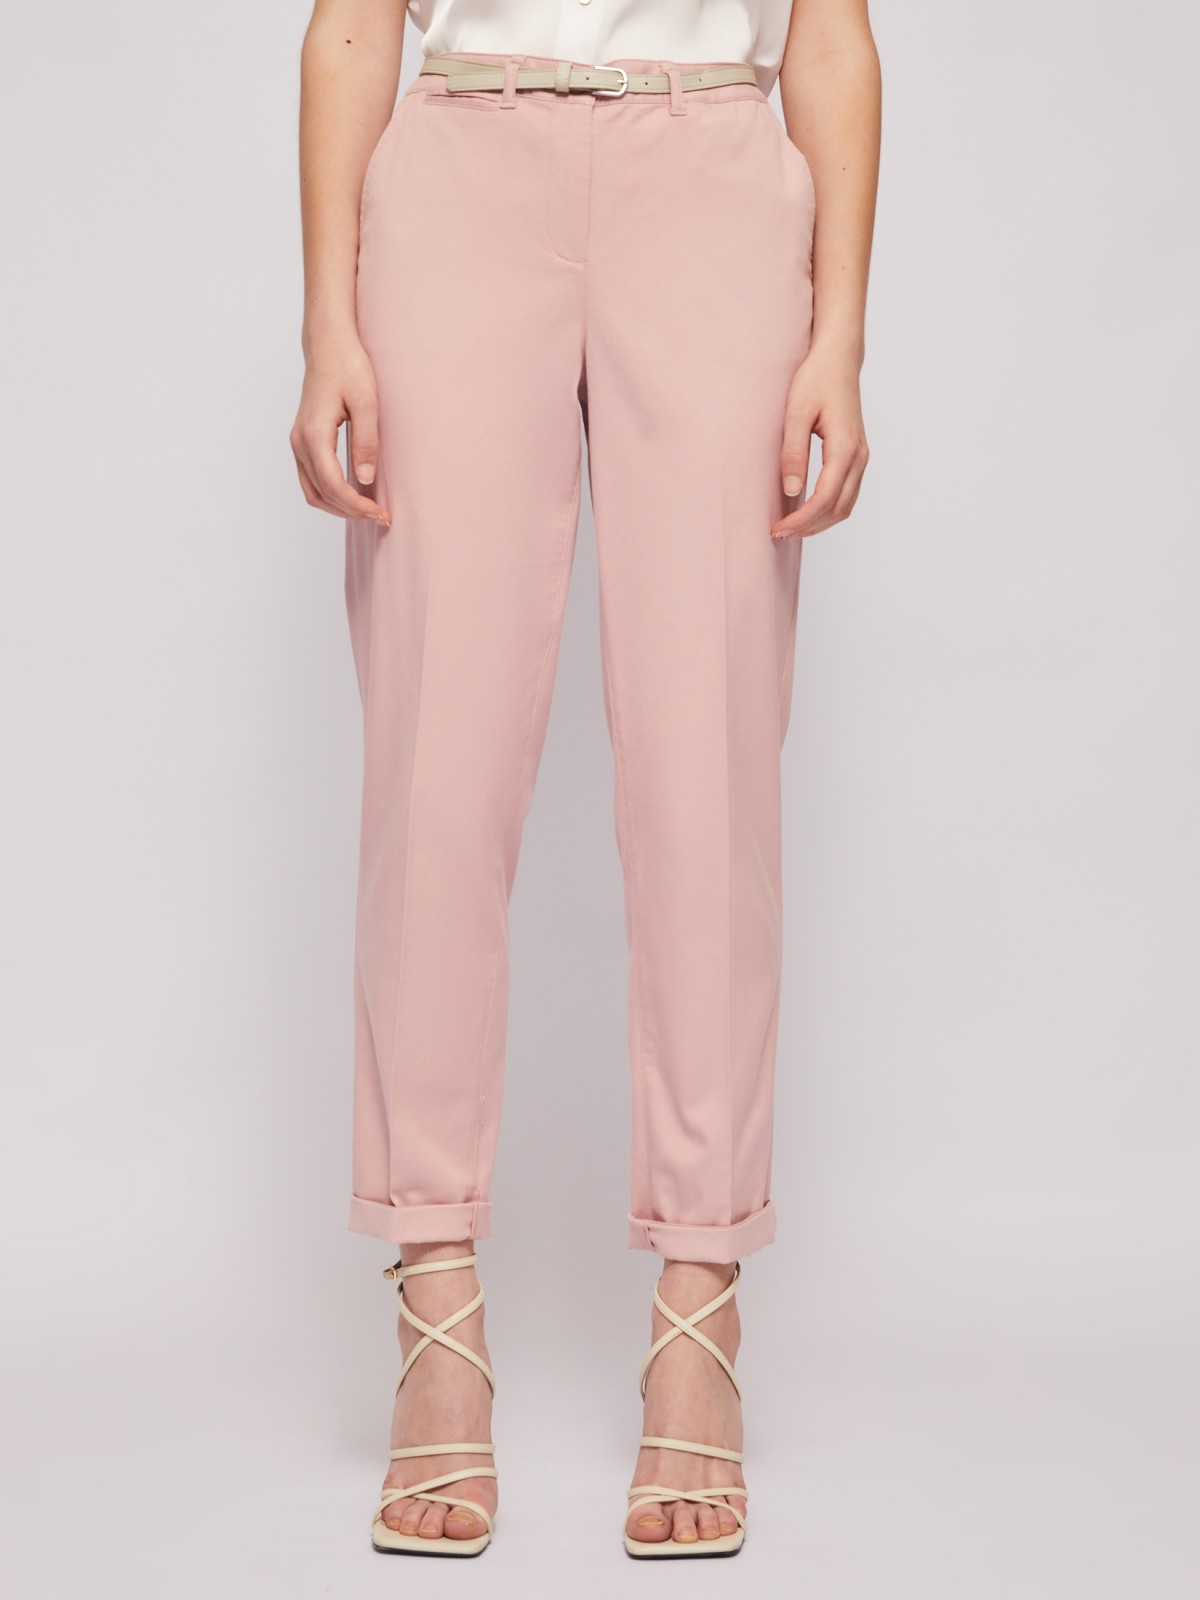 Офисные брюки-чинос со стрелками и ремнём zolla 02422736F043, цвет розовый, размер S - фото 2